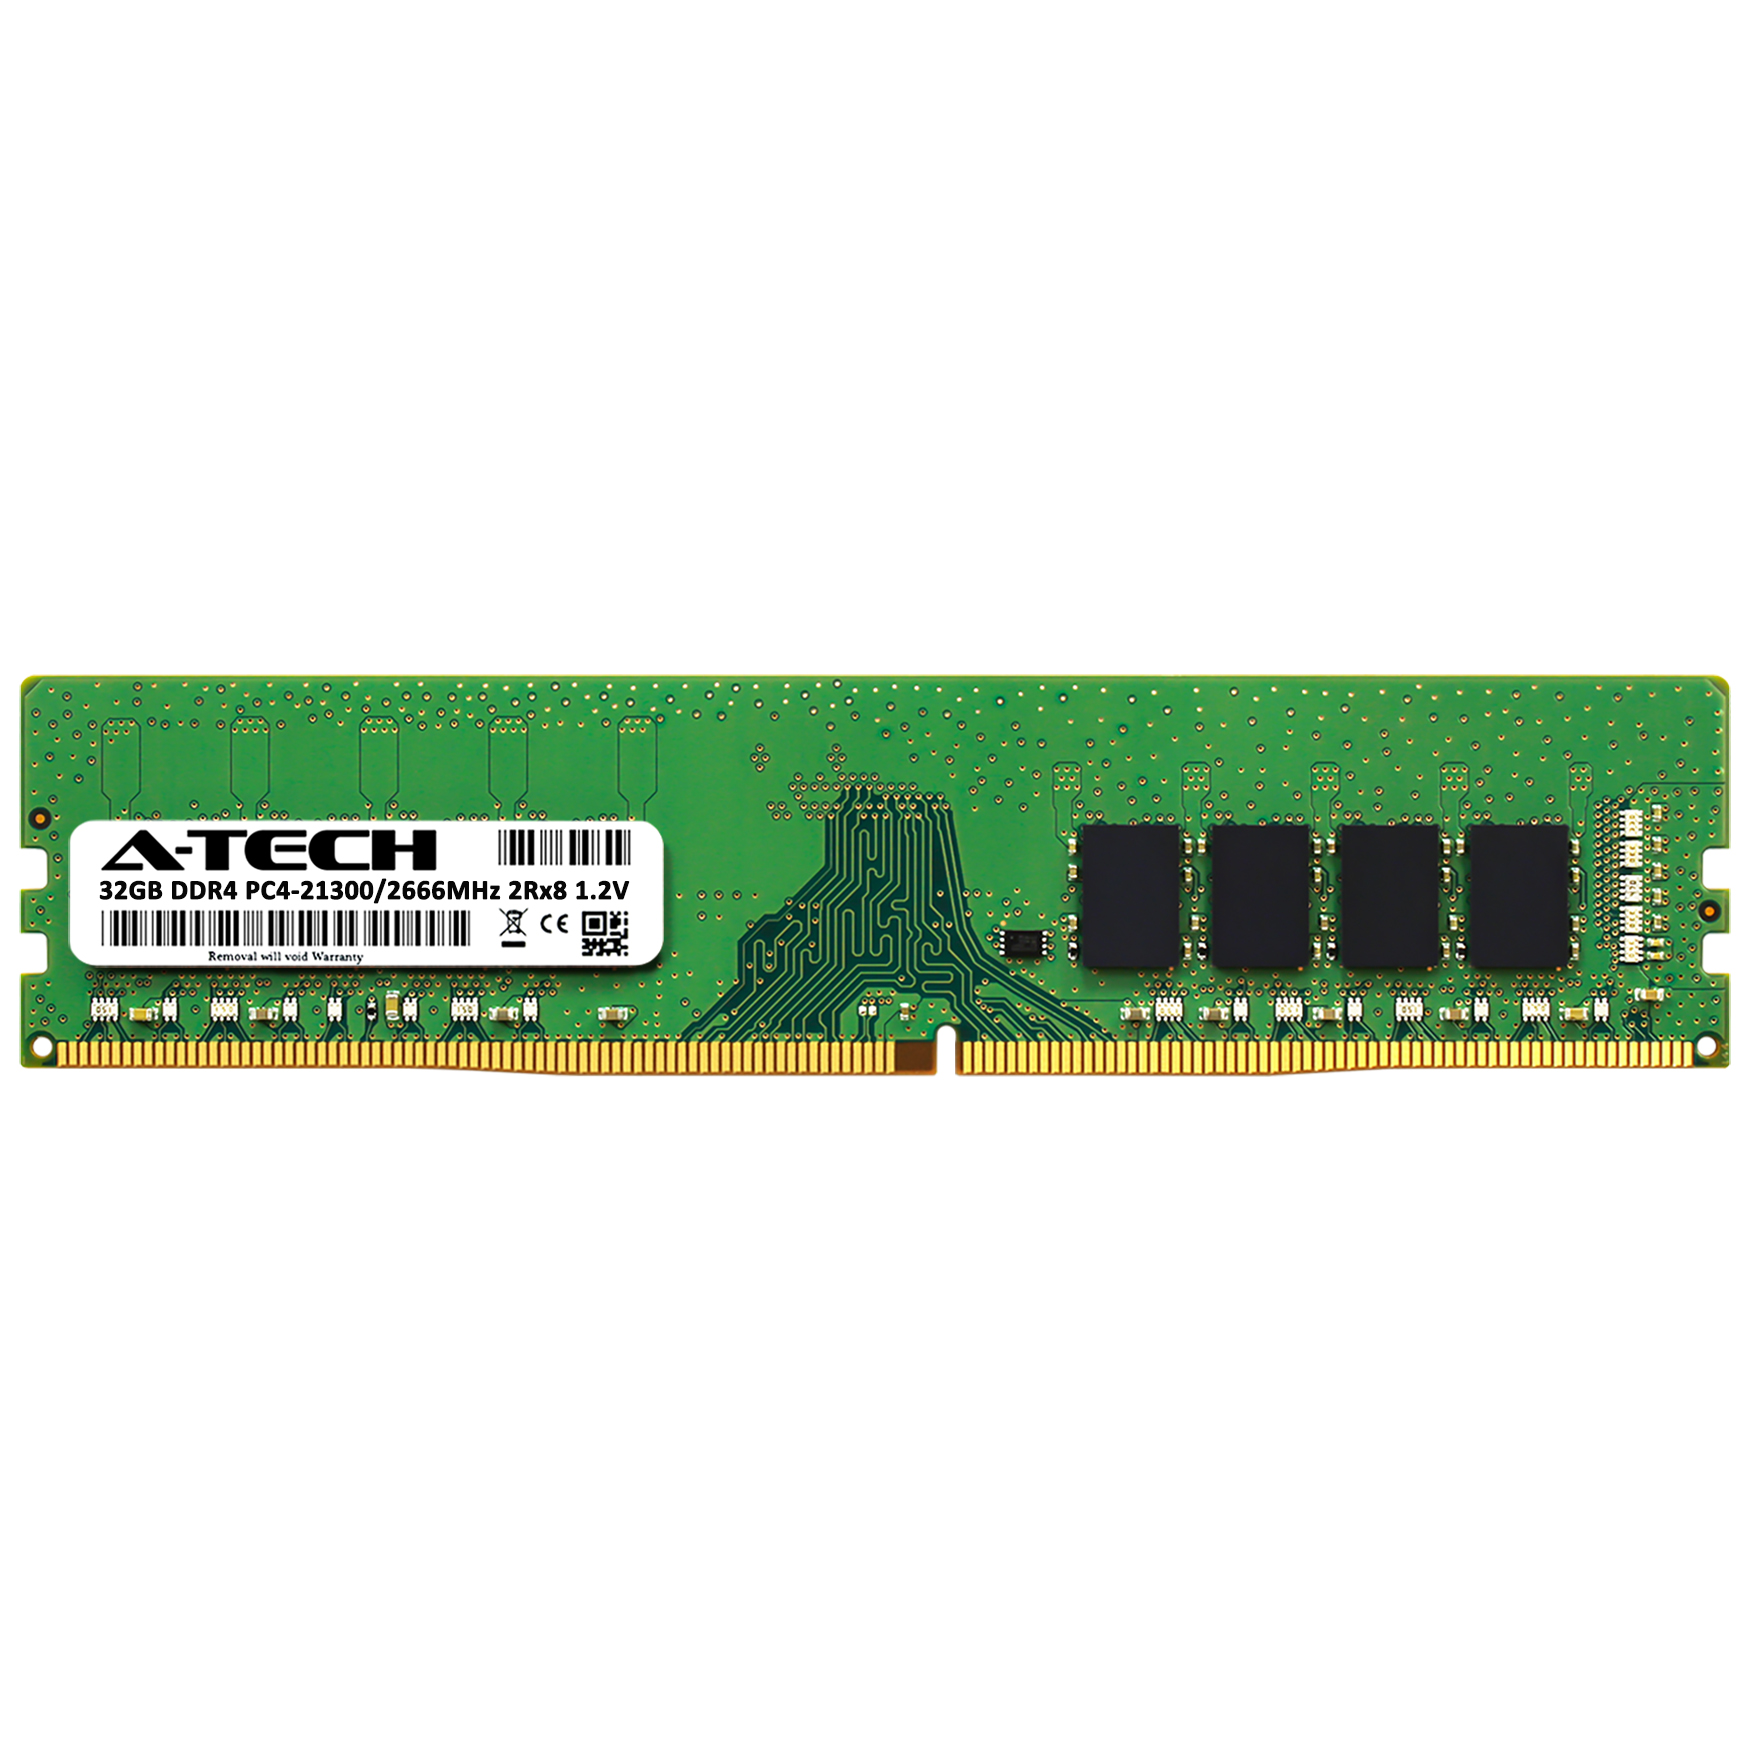 32GB DDR4 2666MHz PC4-21300 Desktop Memory RAM for Dell Precision 